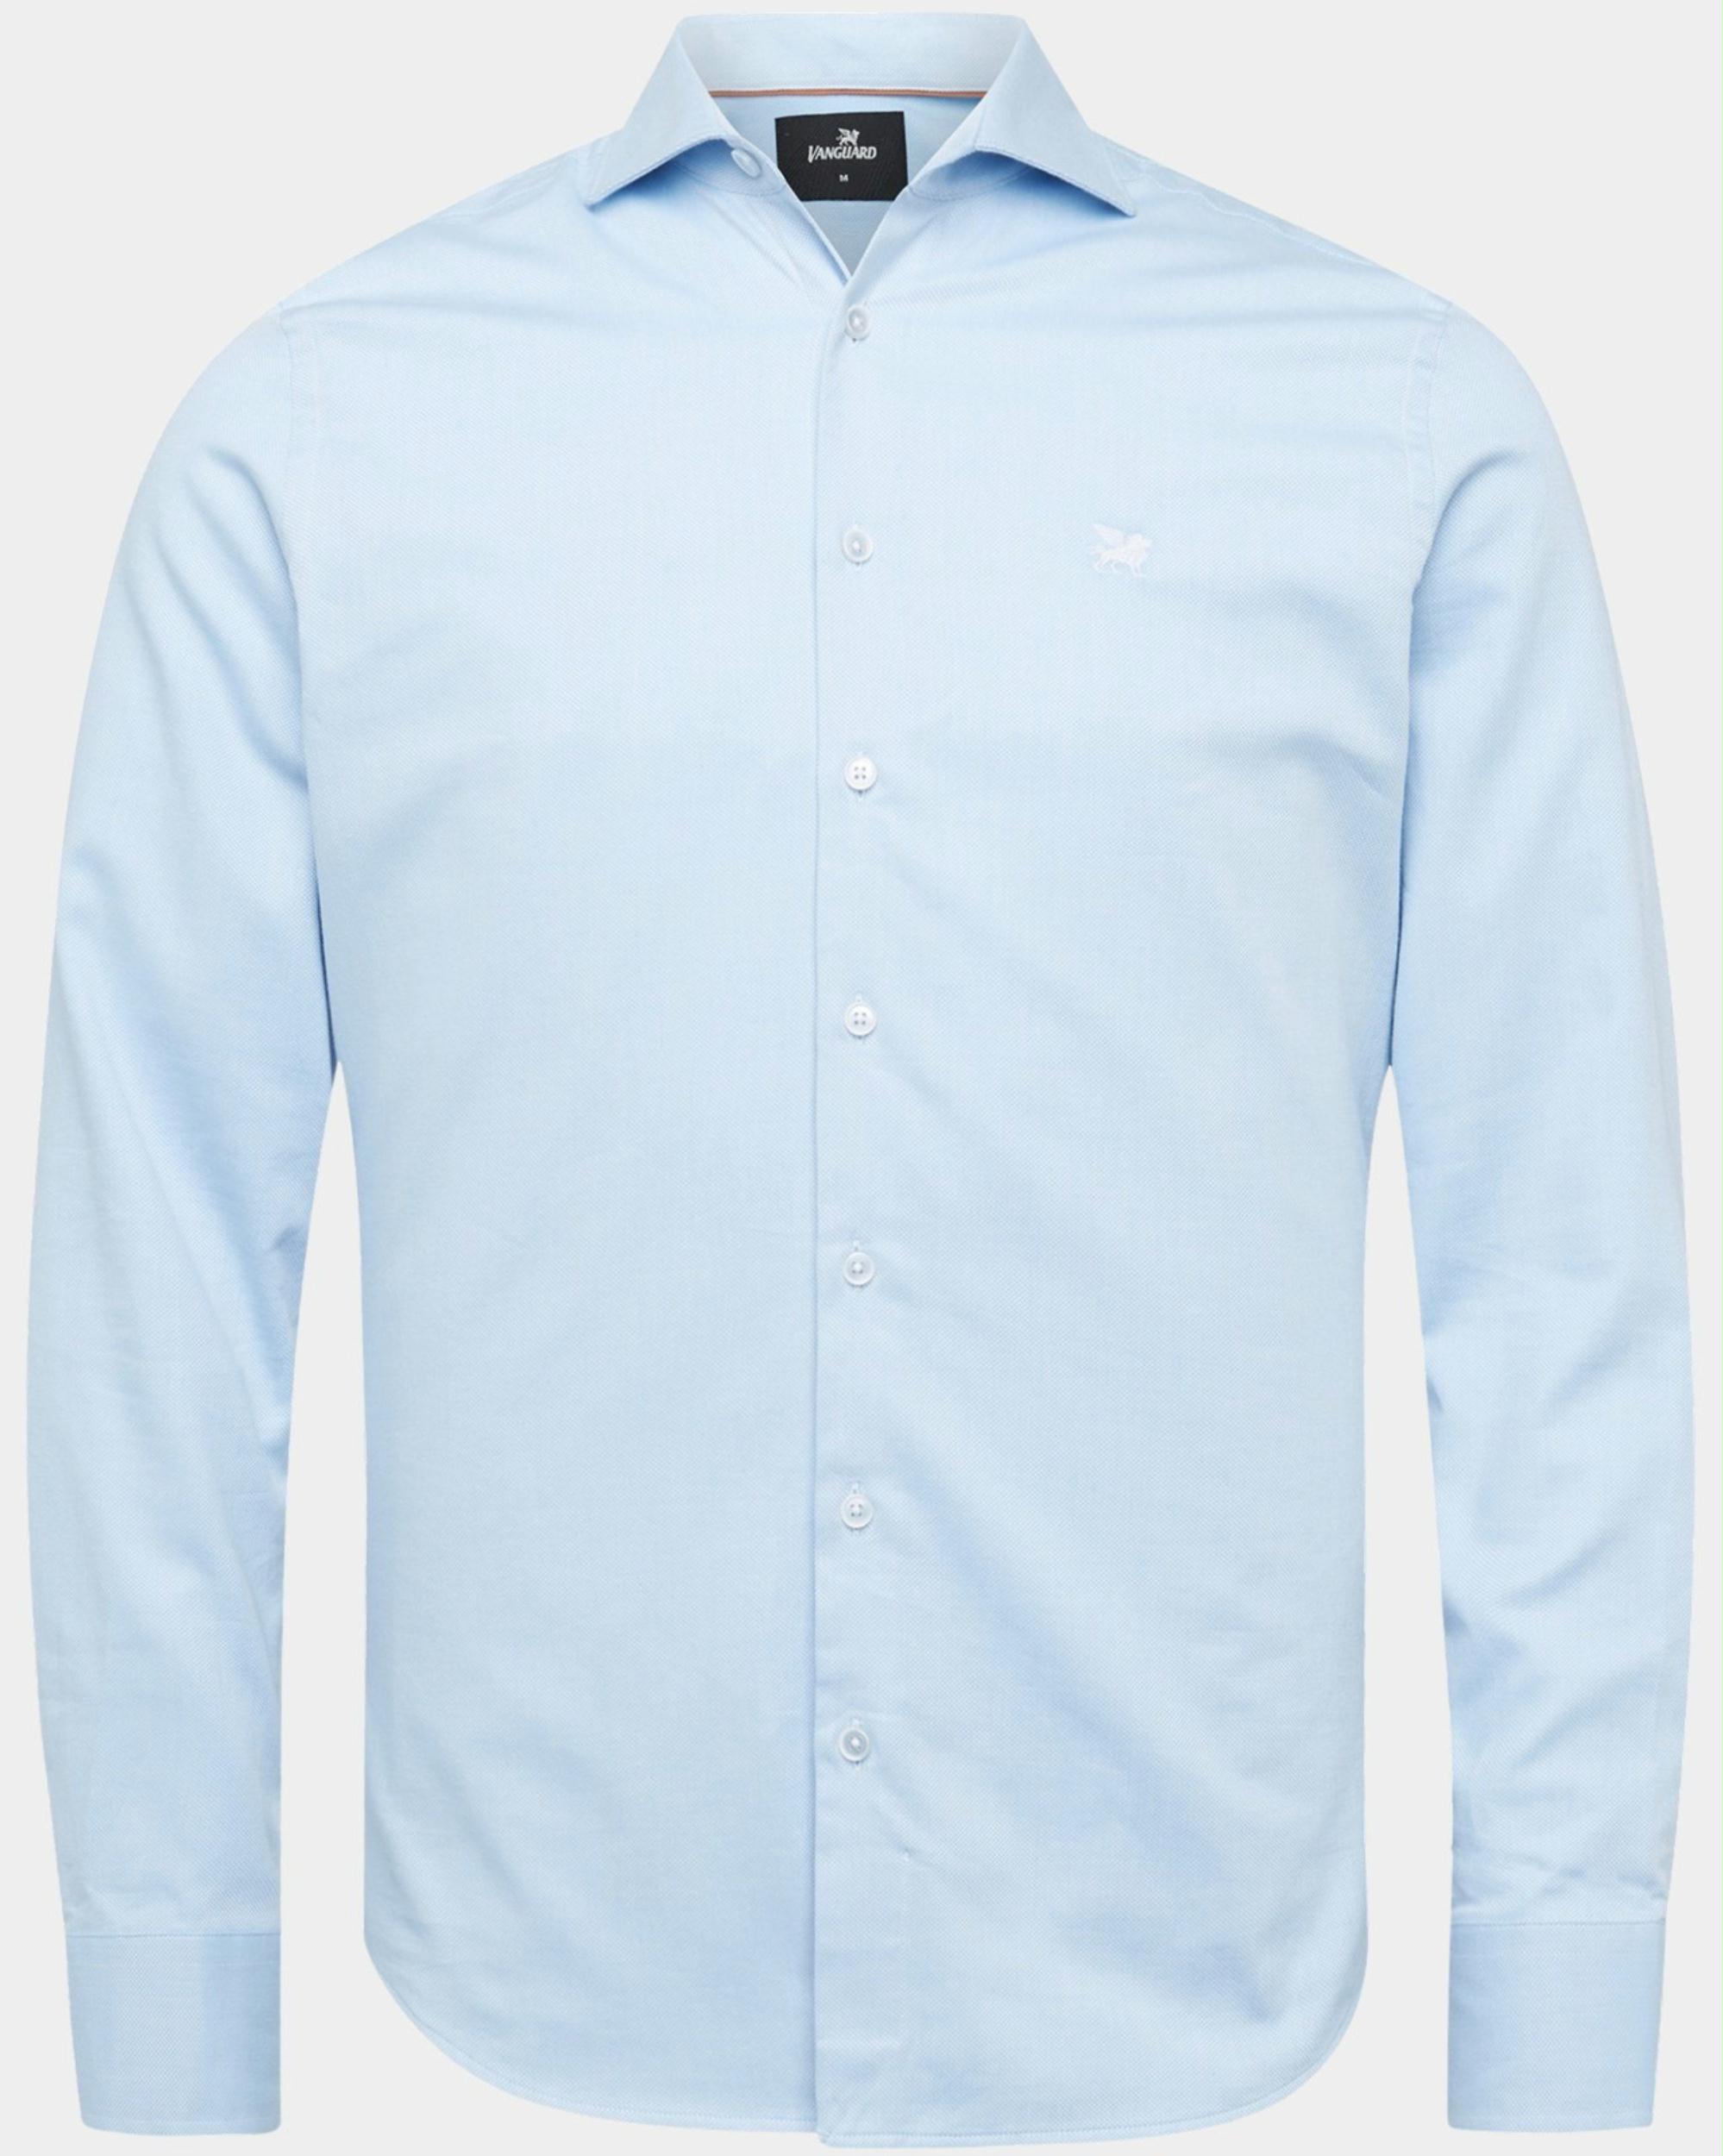 Vanguard Casual hemd lange mouw Blauw Long Sleeve Shirt Power stret VSI2302204 5401